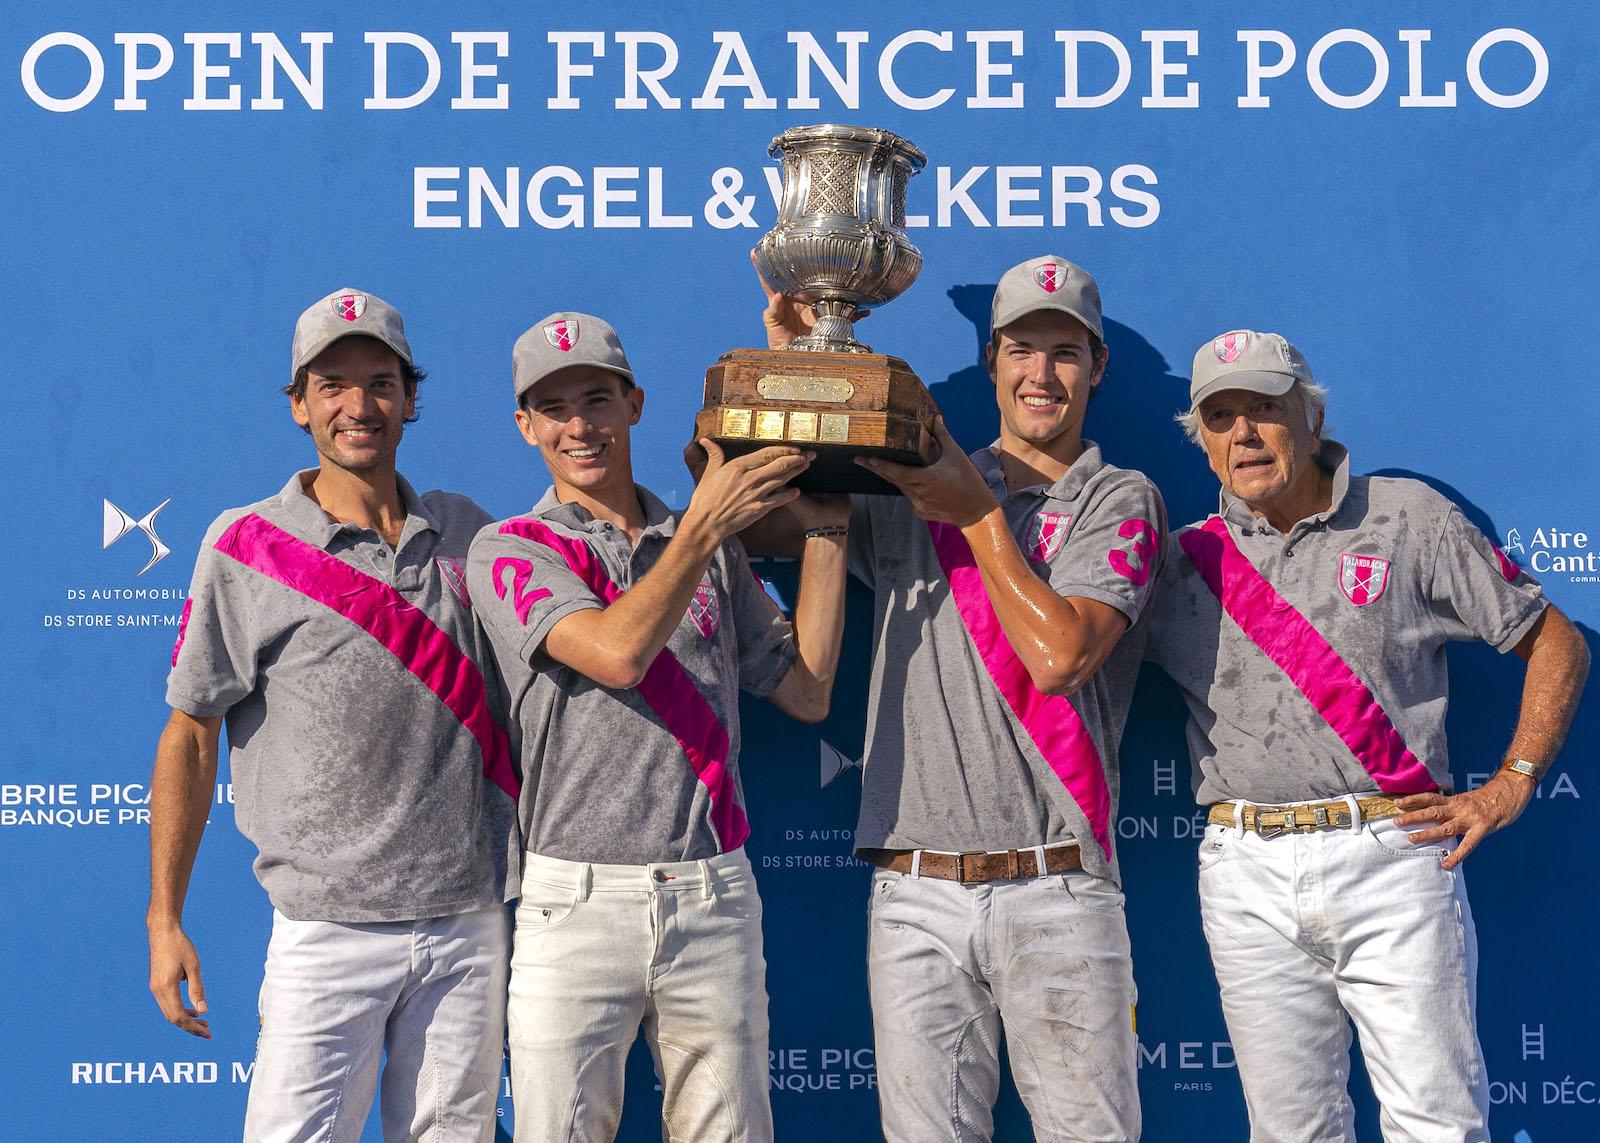 Deuxième victoire dans l’Open de France pour Édouard Carmignac et son équipe Talandracas, formée de joueurs magiques qu’il recrute au plus haut niveau argentin.